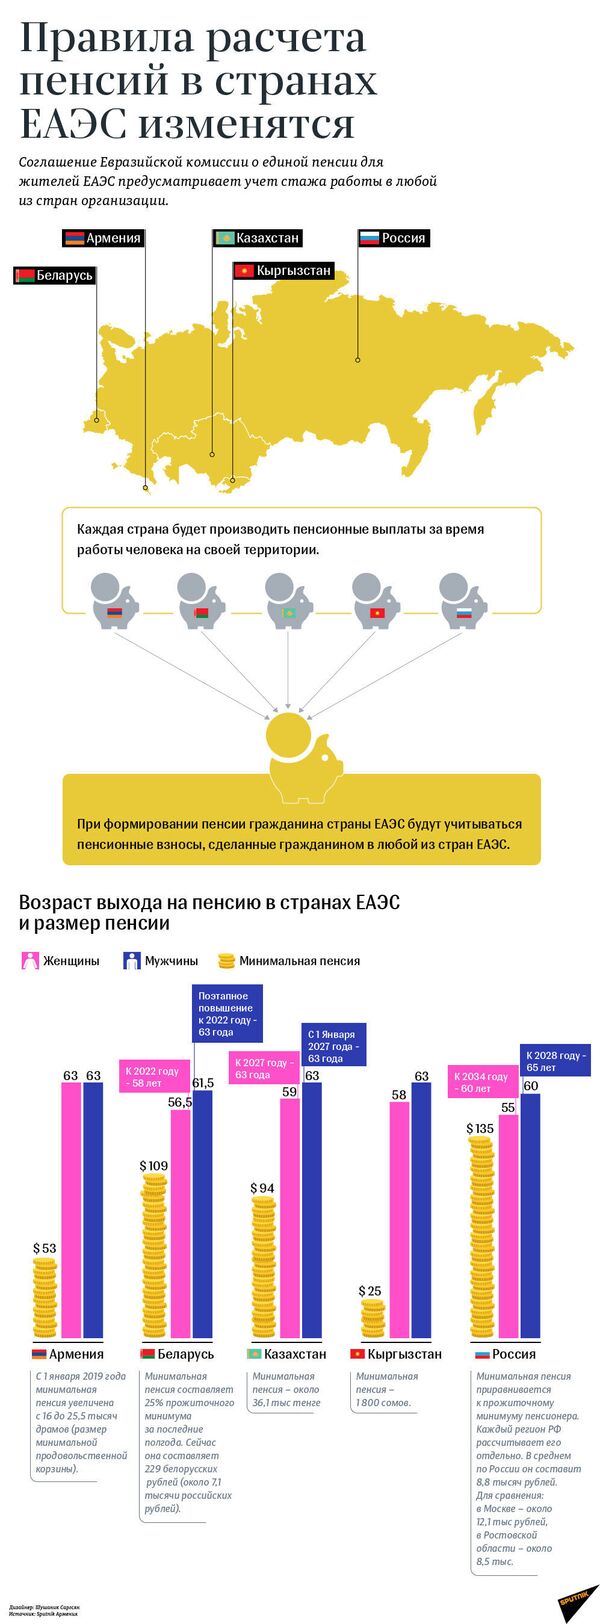 Изменения расчета пенсий в странах ЕАЭС | Инфографика на sputnik.by - Sputnik Беларусь